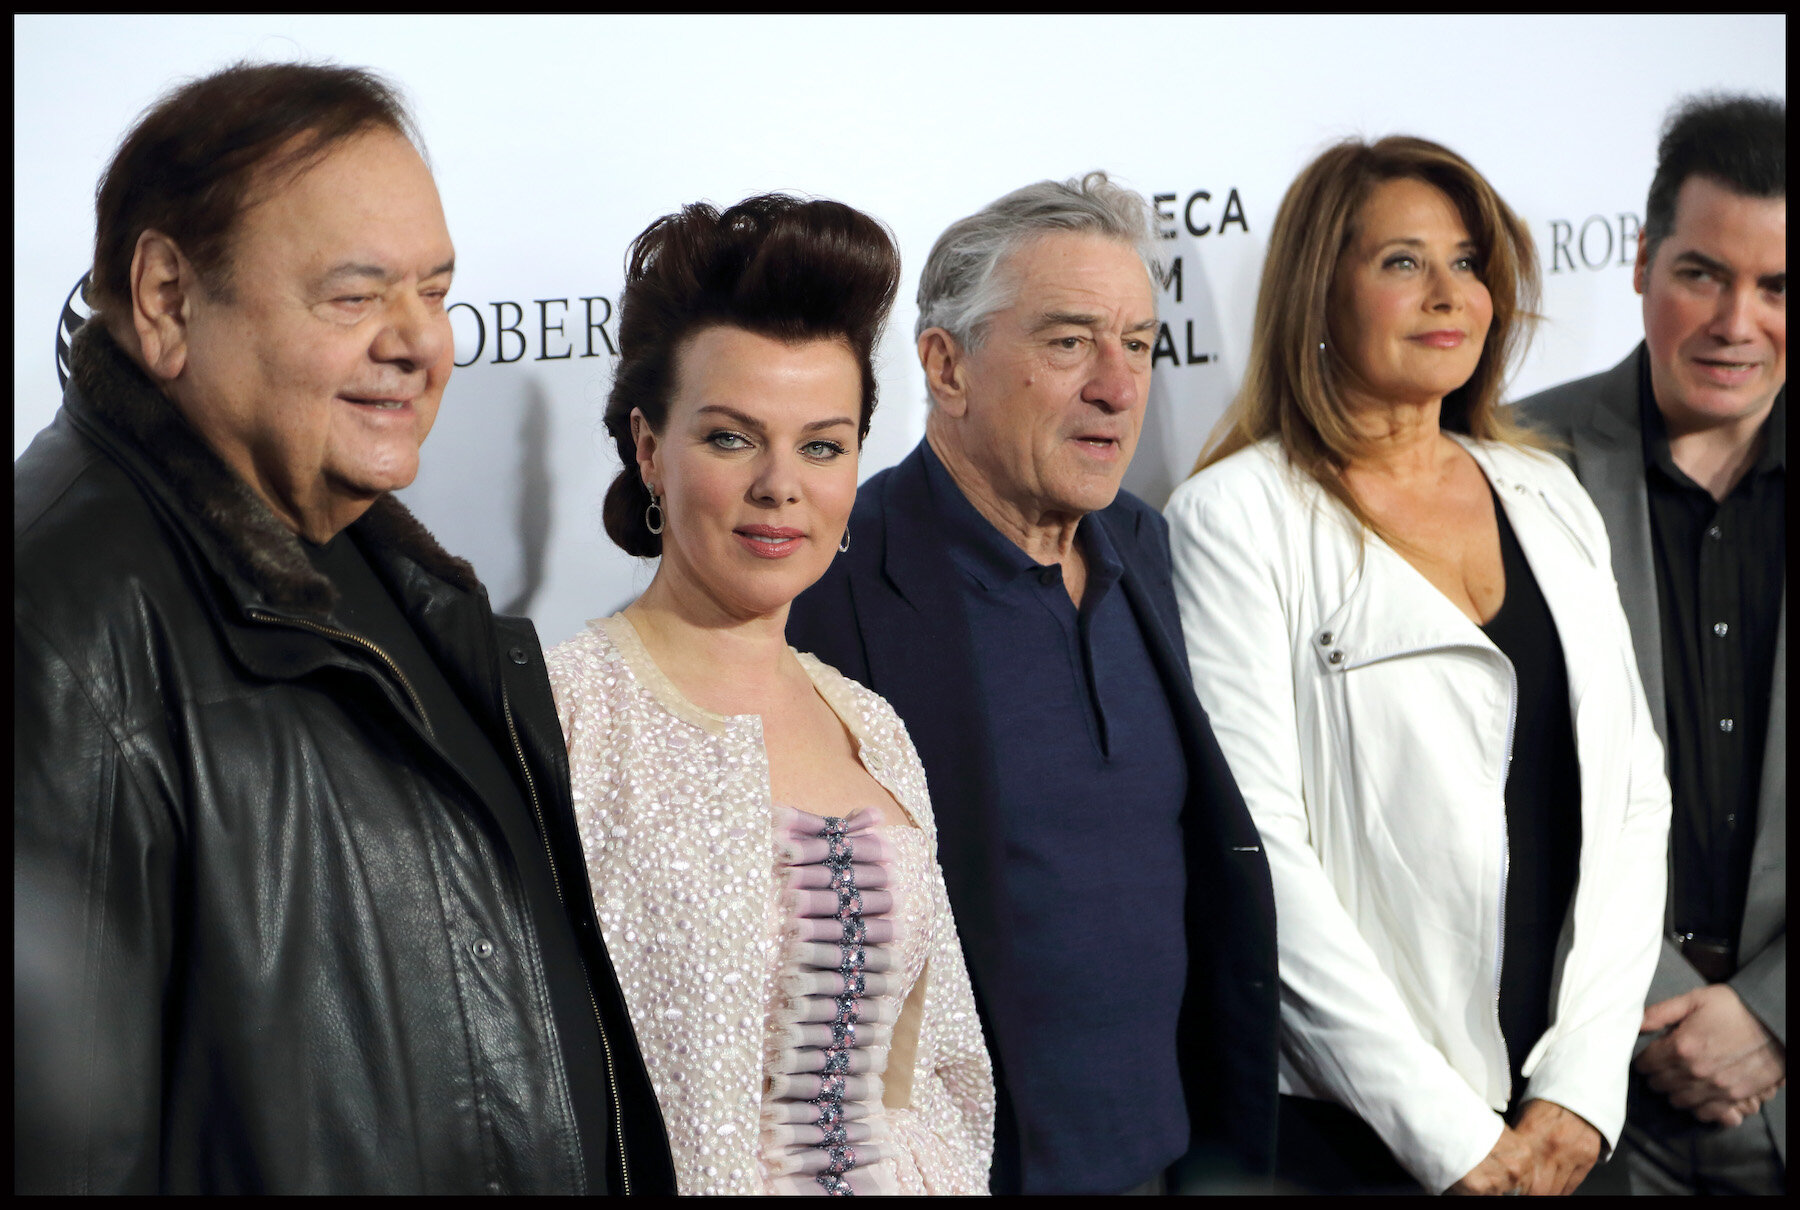 Paul Sorvino, Debi Mazar, Robert De Niro, Lorraine Bracco & Kevin Corrigan